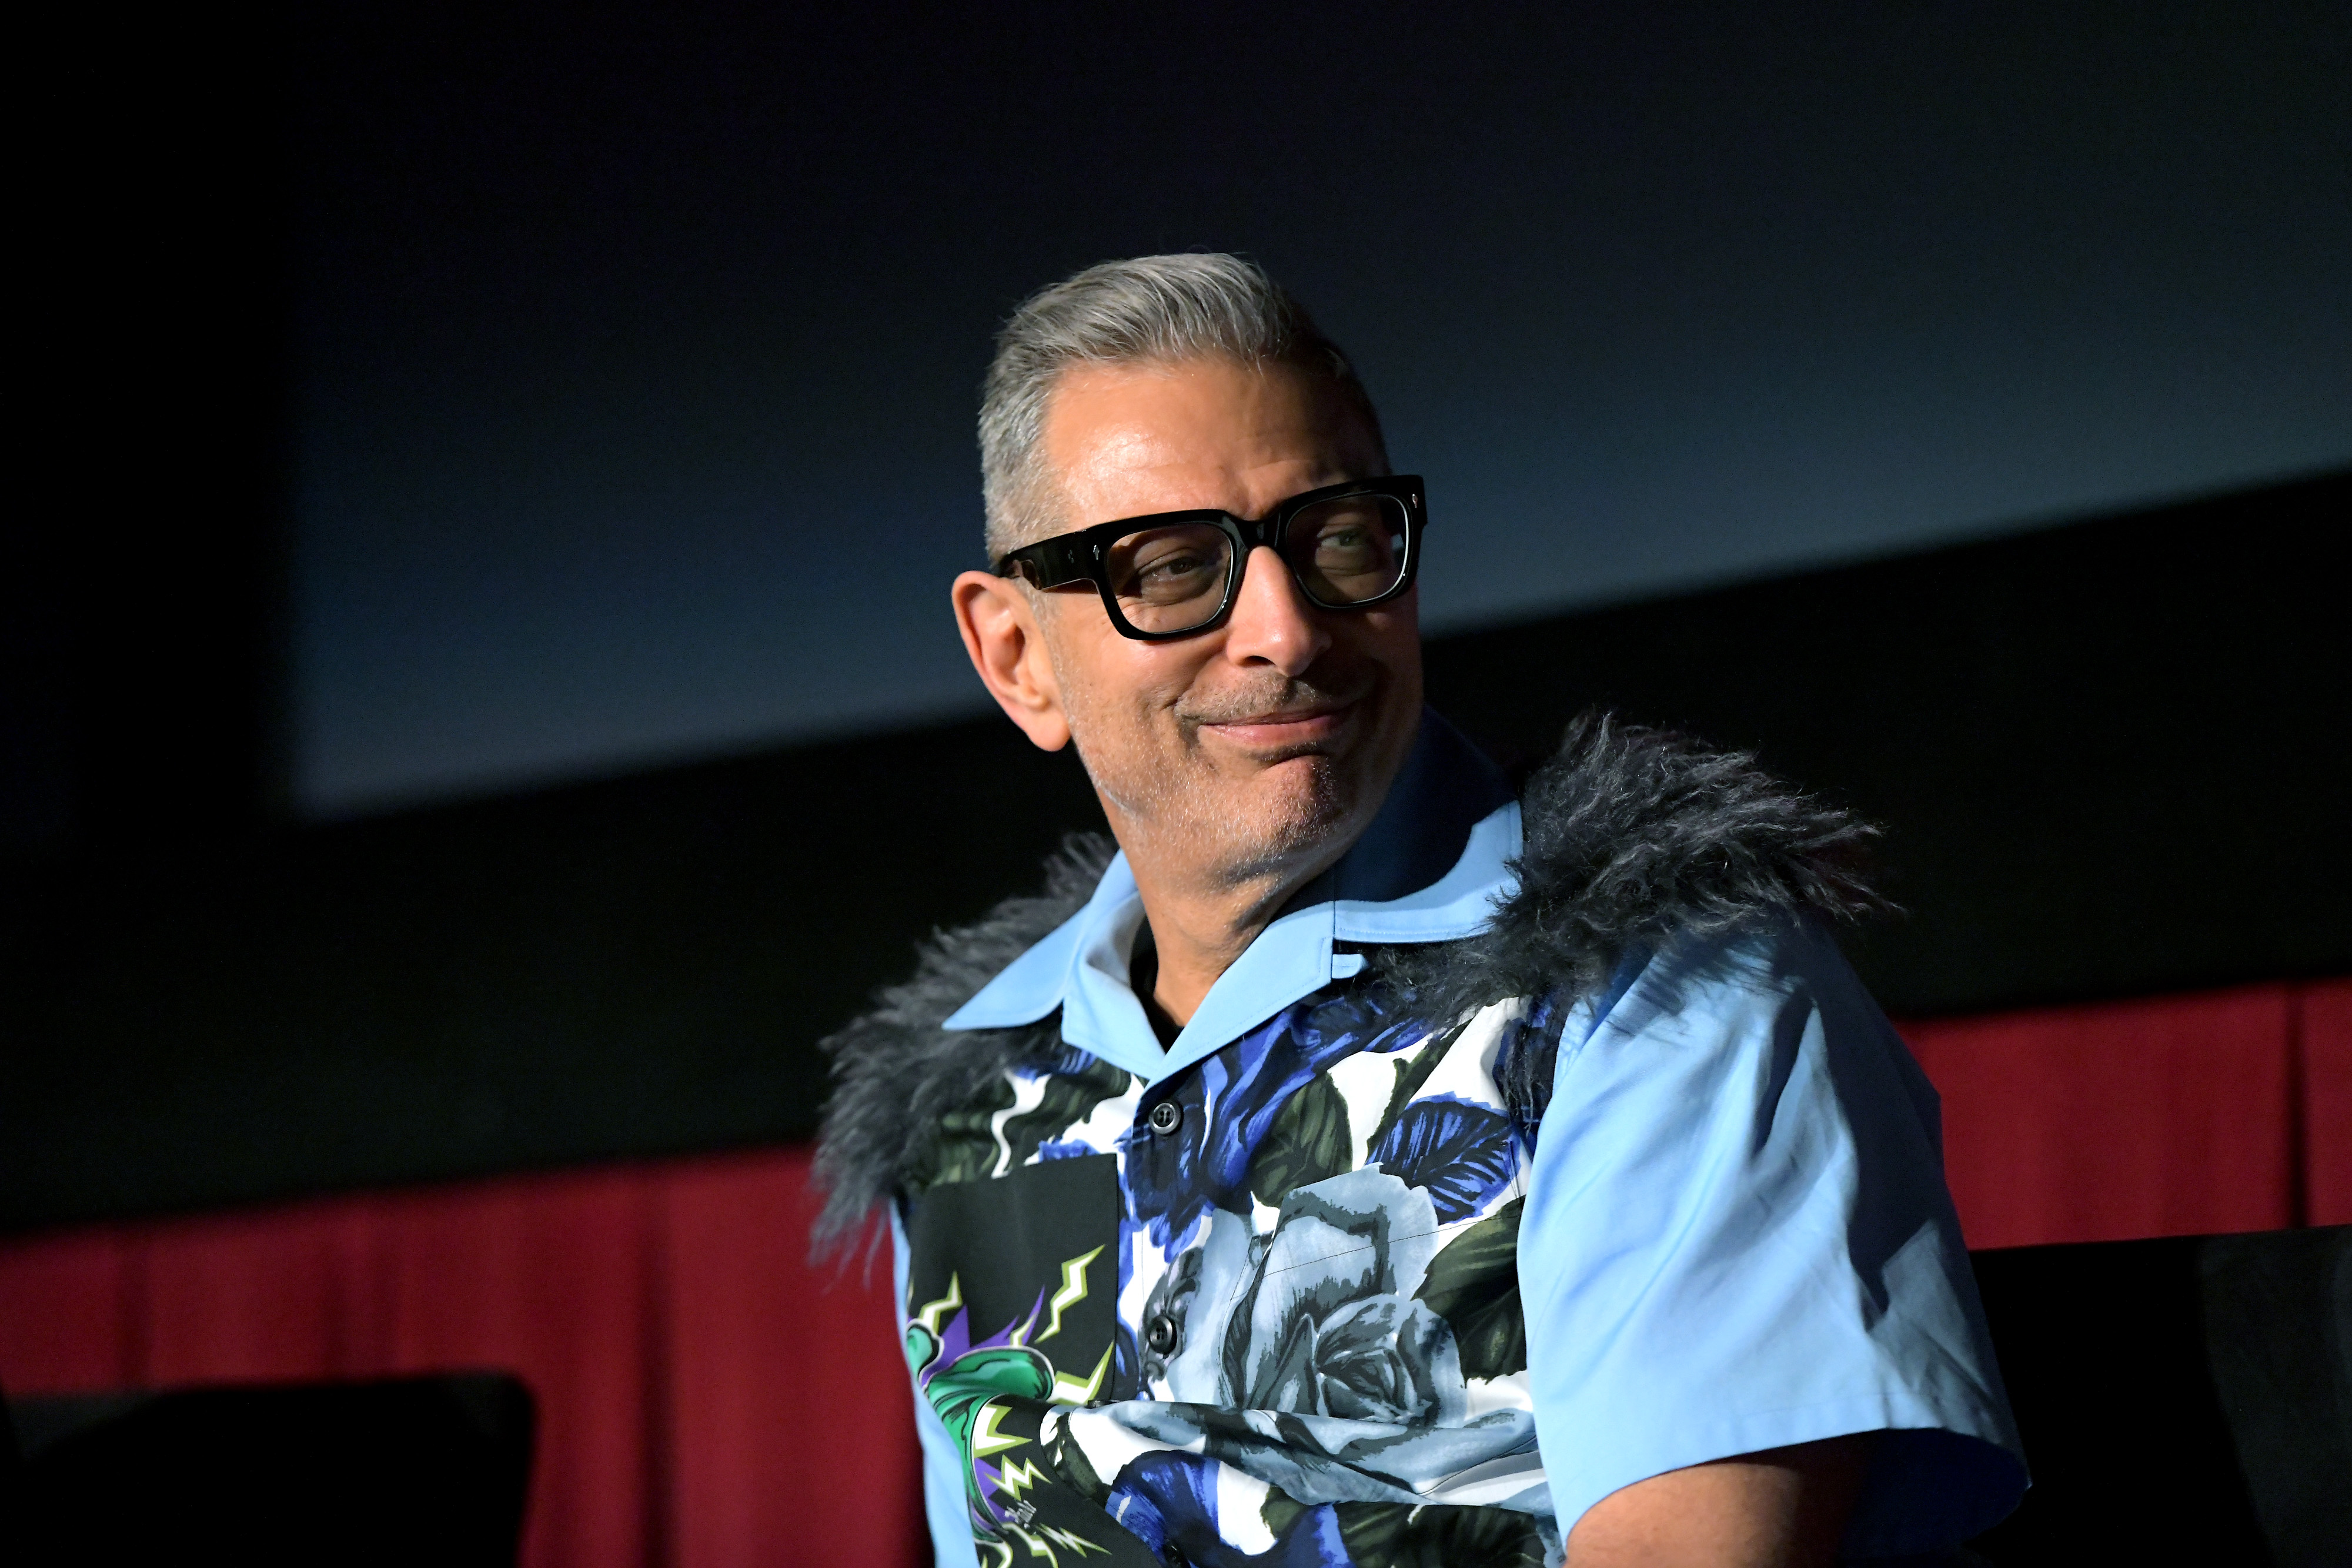 Sokan nem fogadták jól, hogy Jeff Goldblum akár dolgozna is Woody Allennel